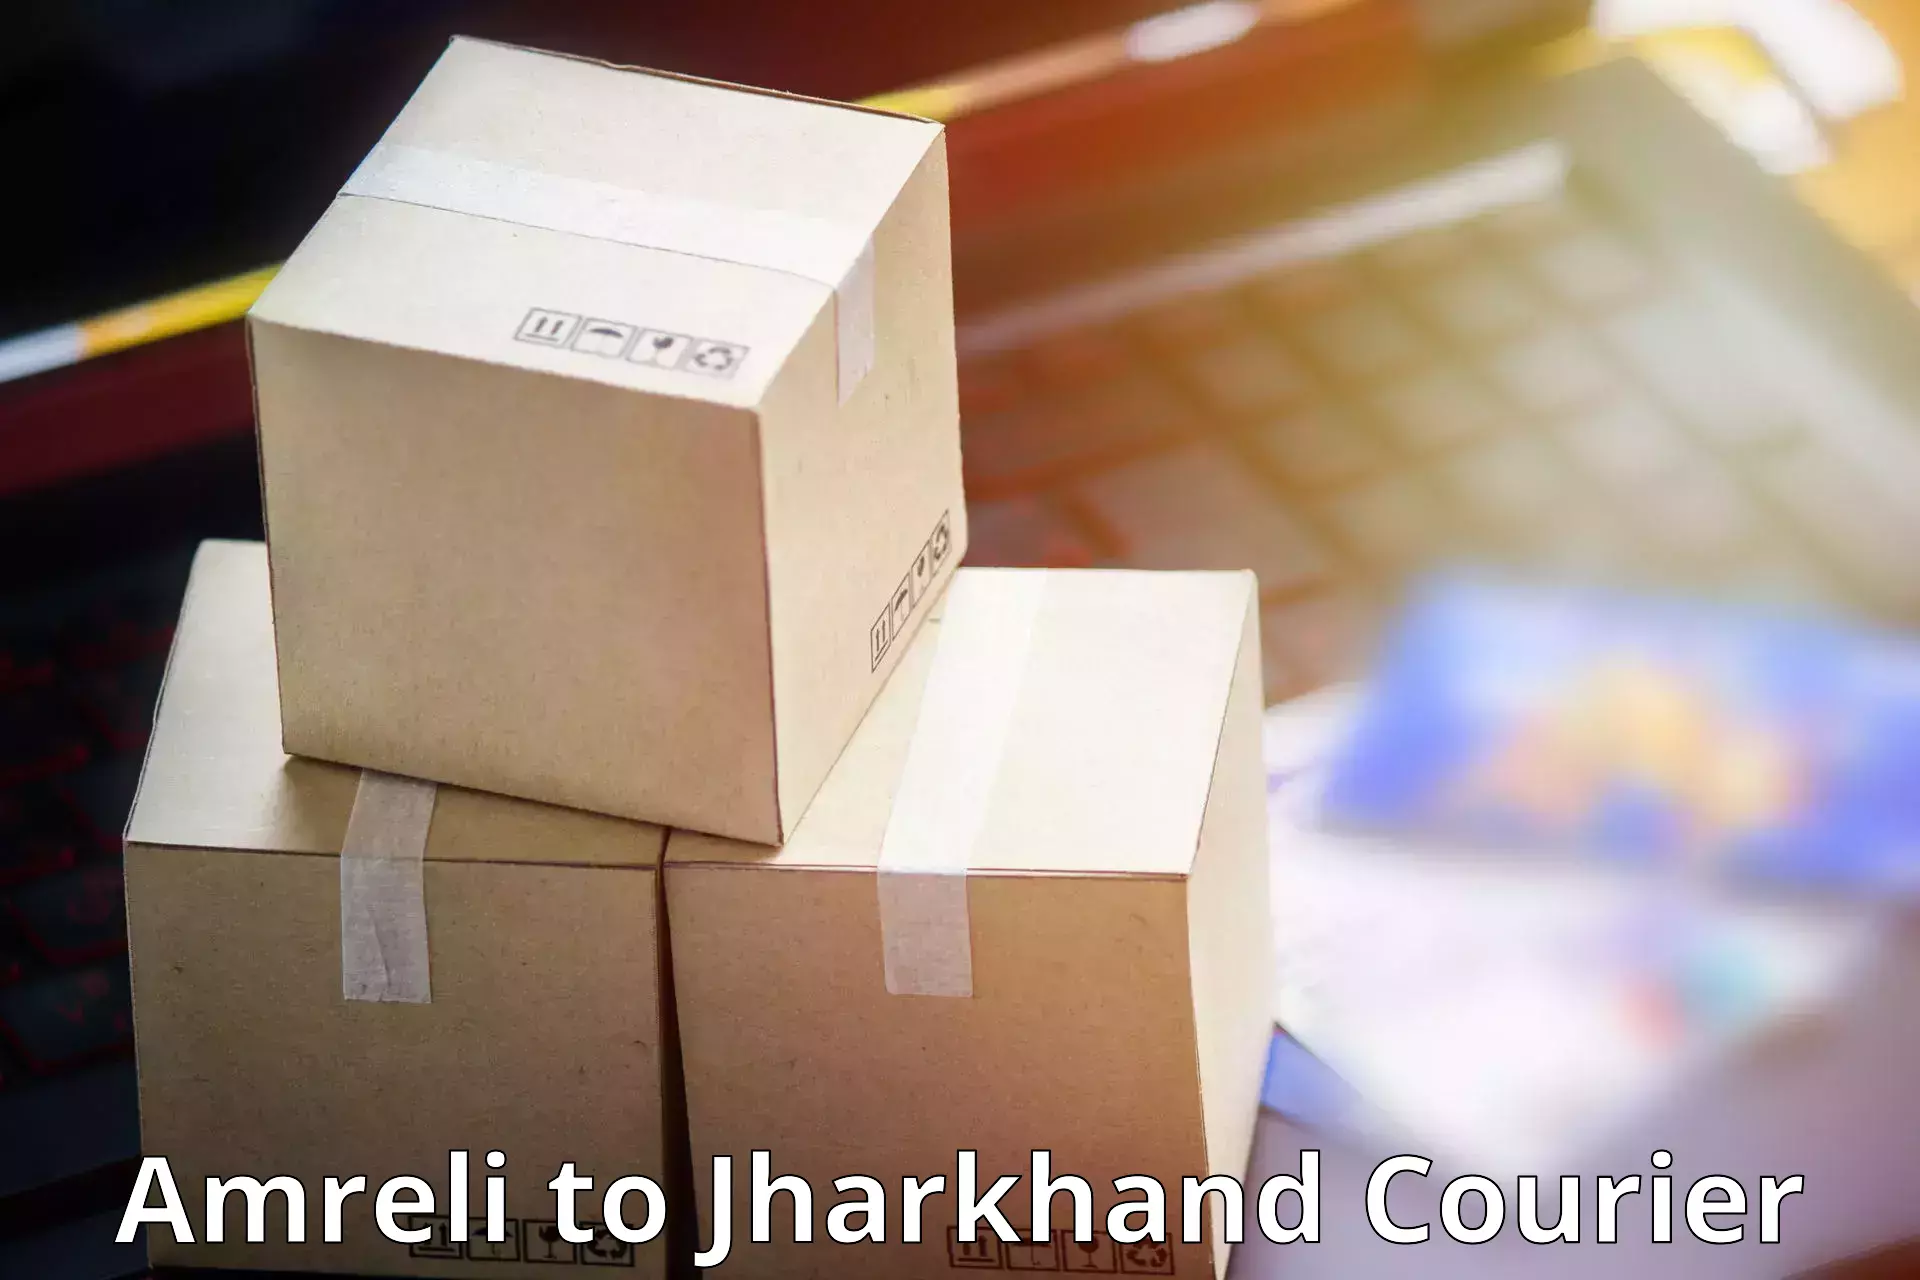 Global courier networks Amreli to Chakradharpur